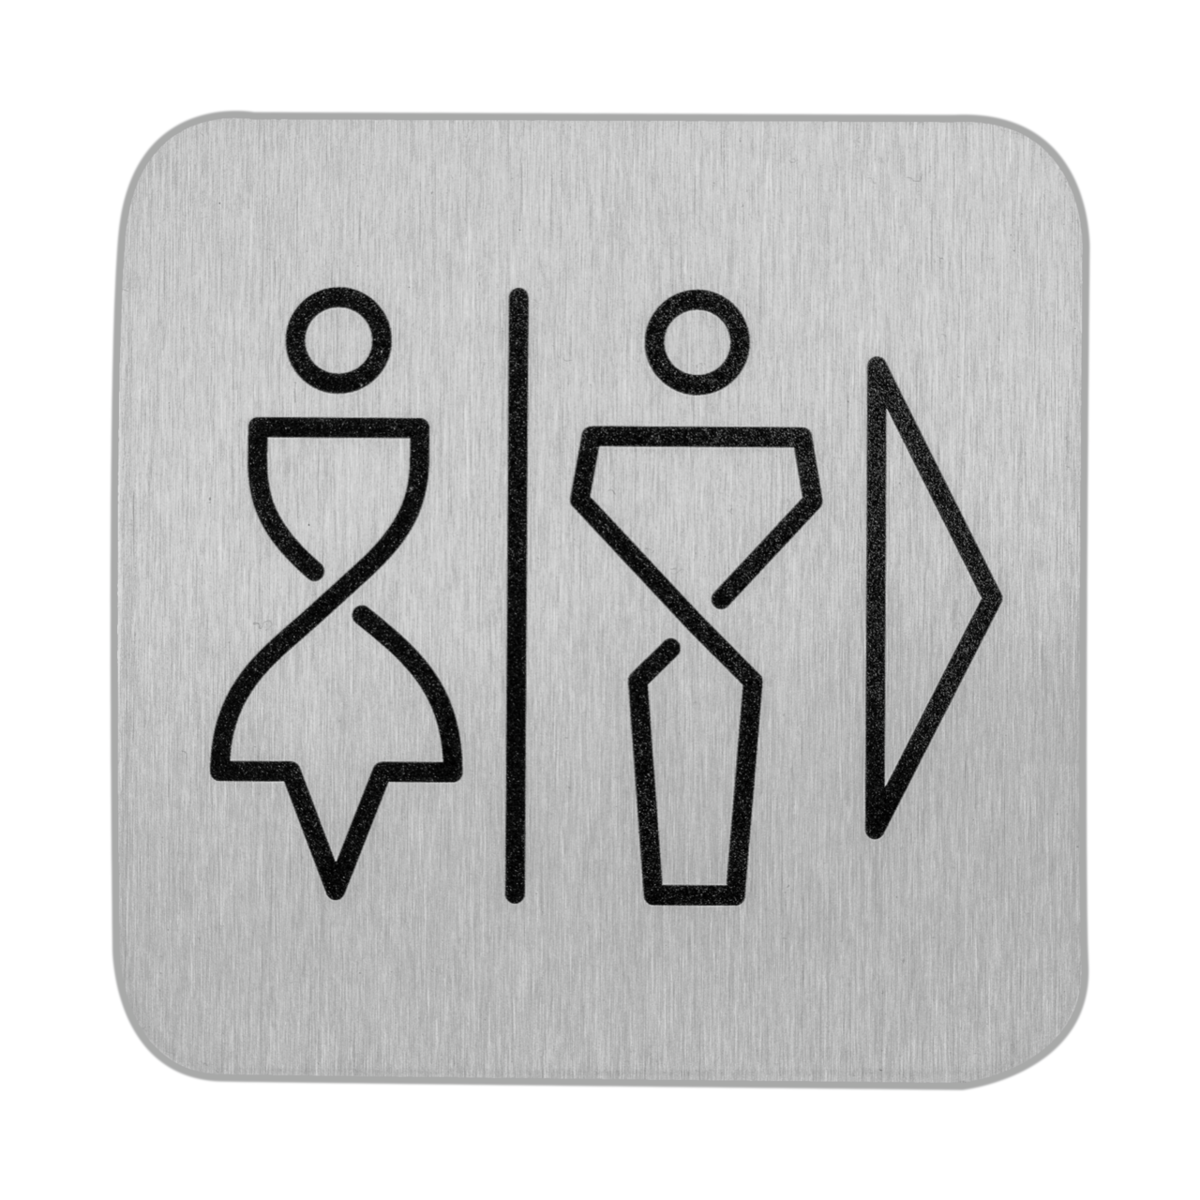 Sign E ST Washroom Men/Women - right direction